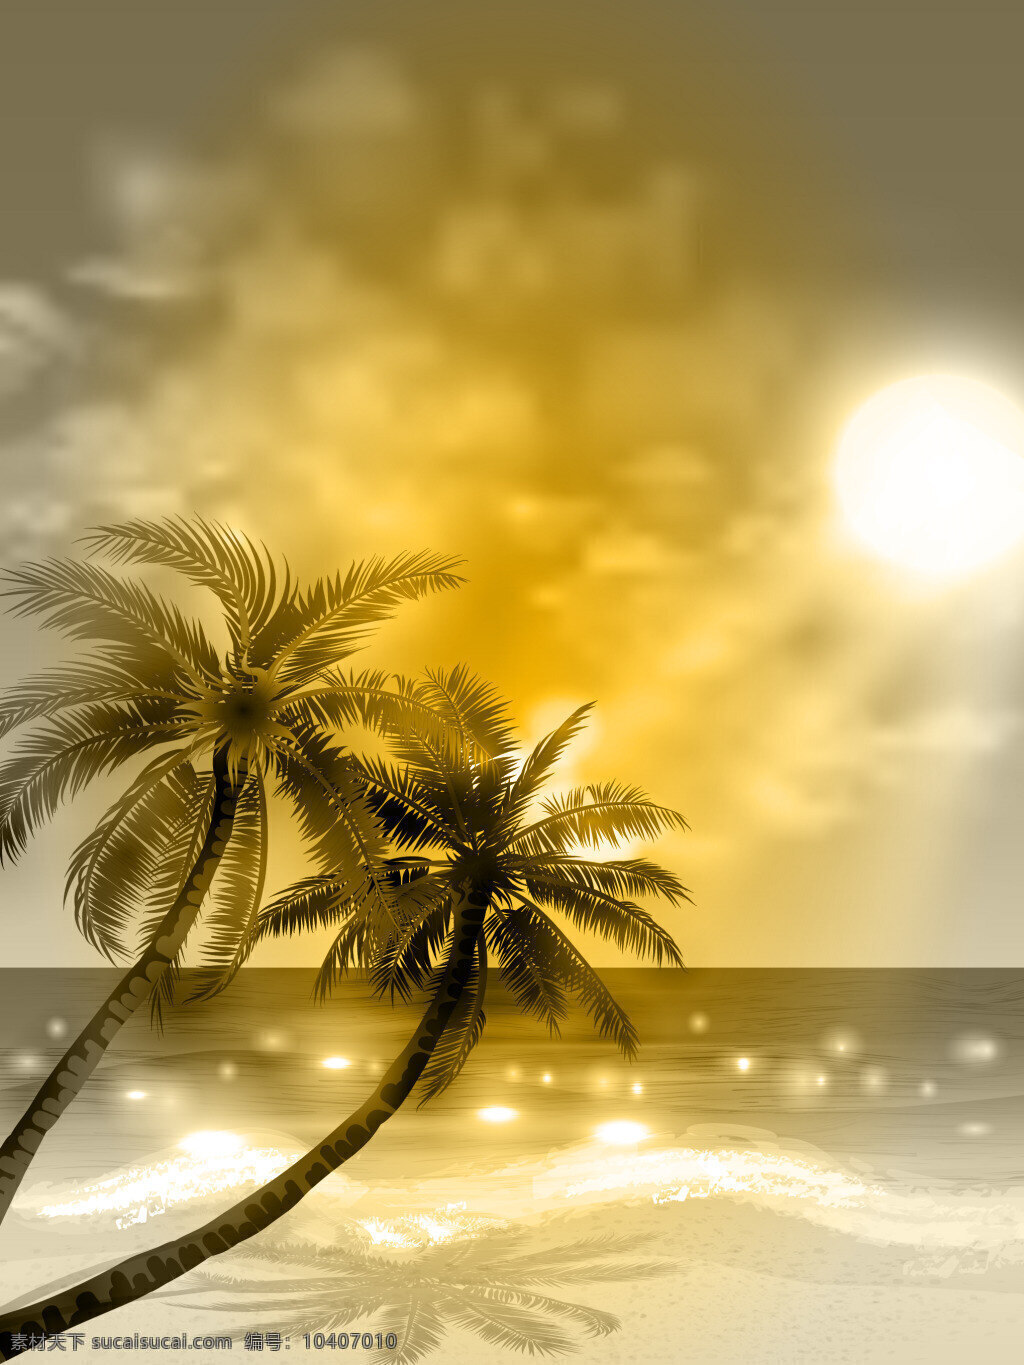 矢量 梦幻 金色 黄昏 椰树 海岛 背景 风景 沙滩 旅游 海边 度假 夏日 海报